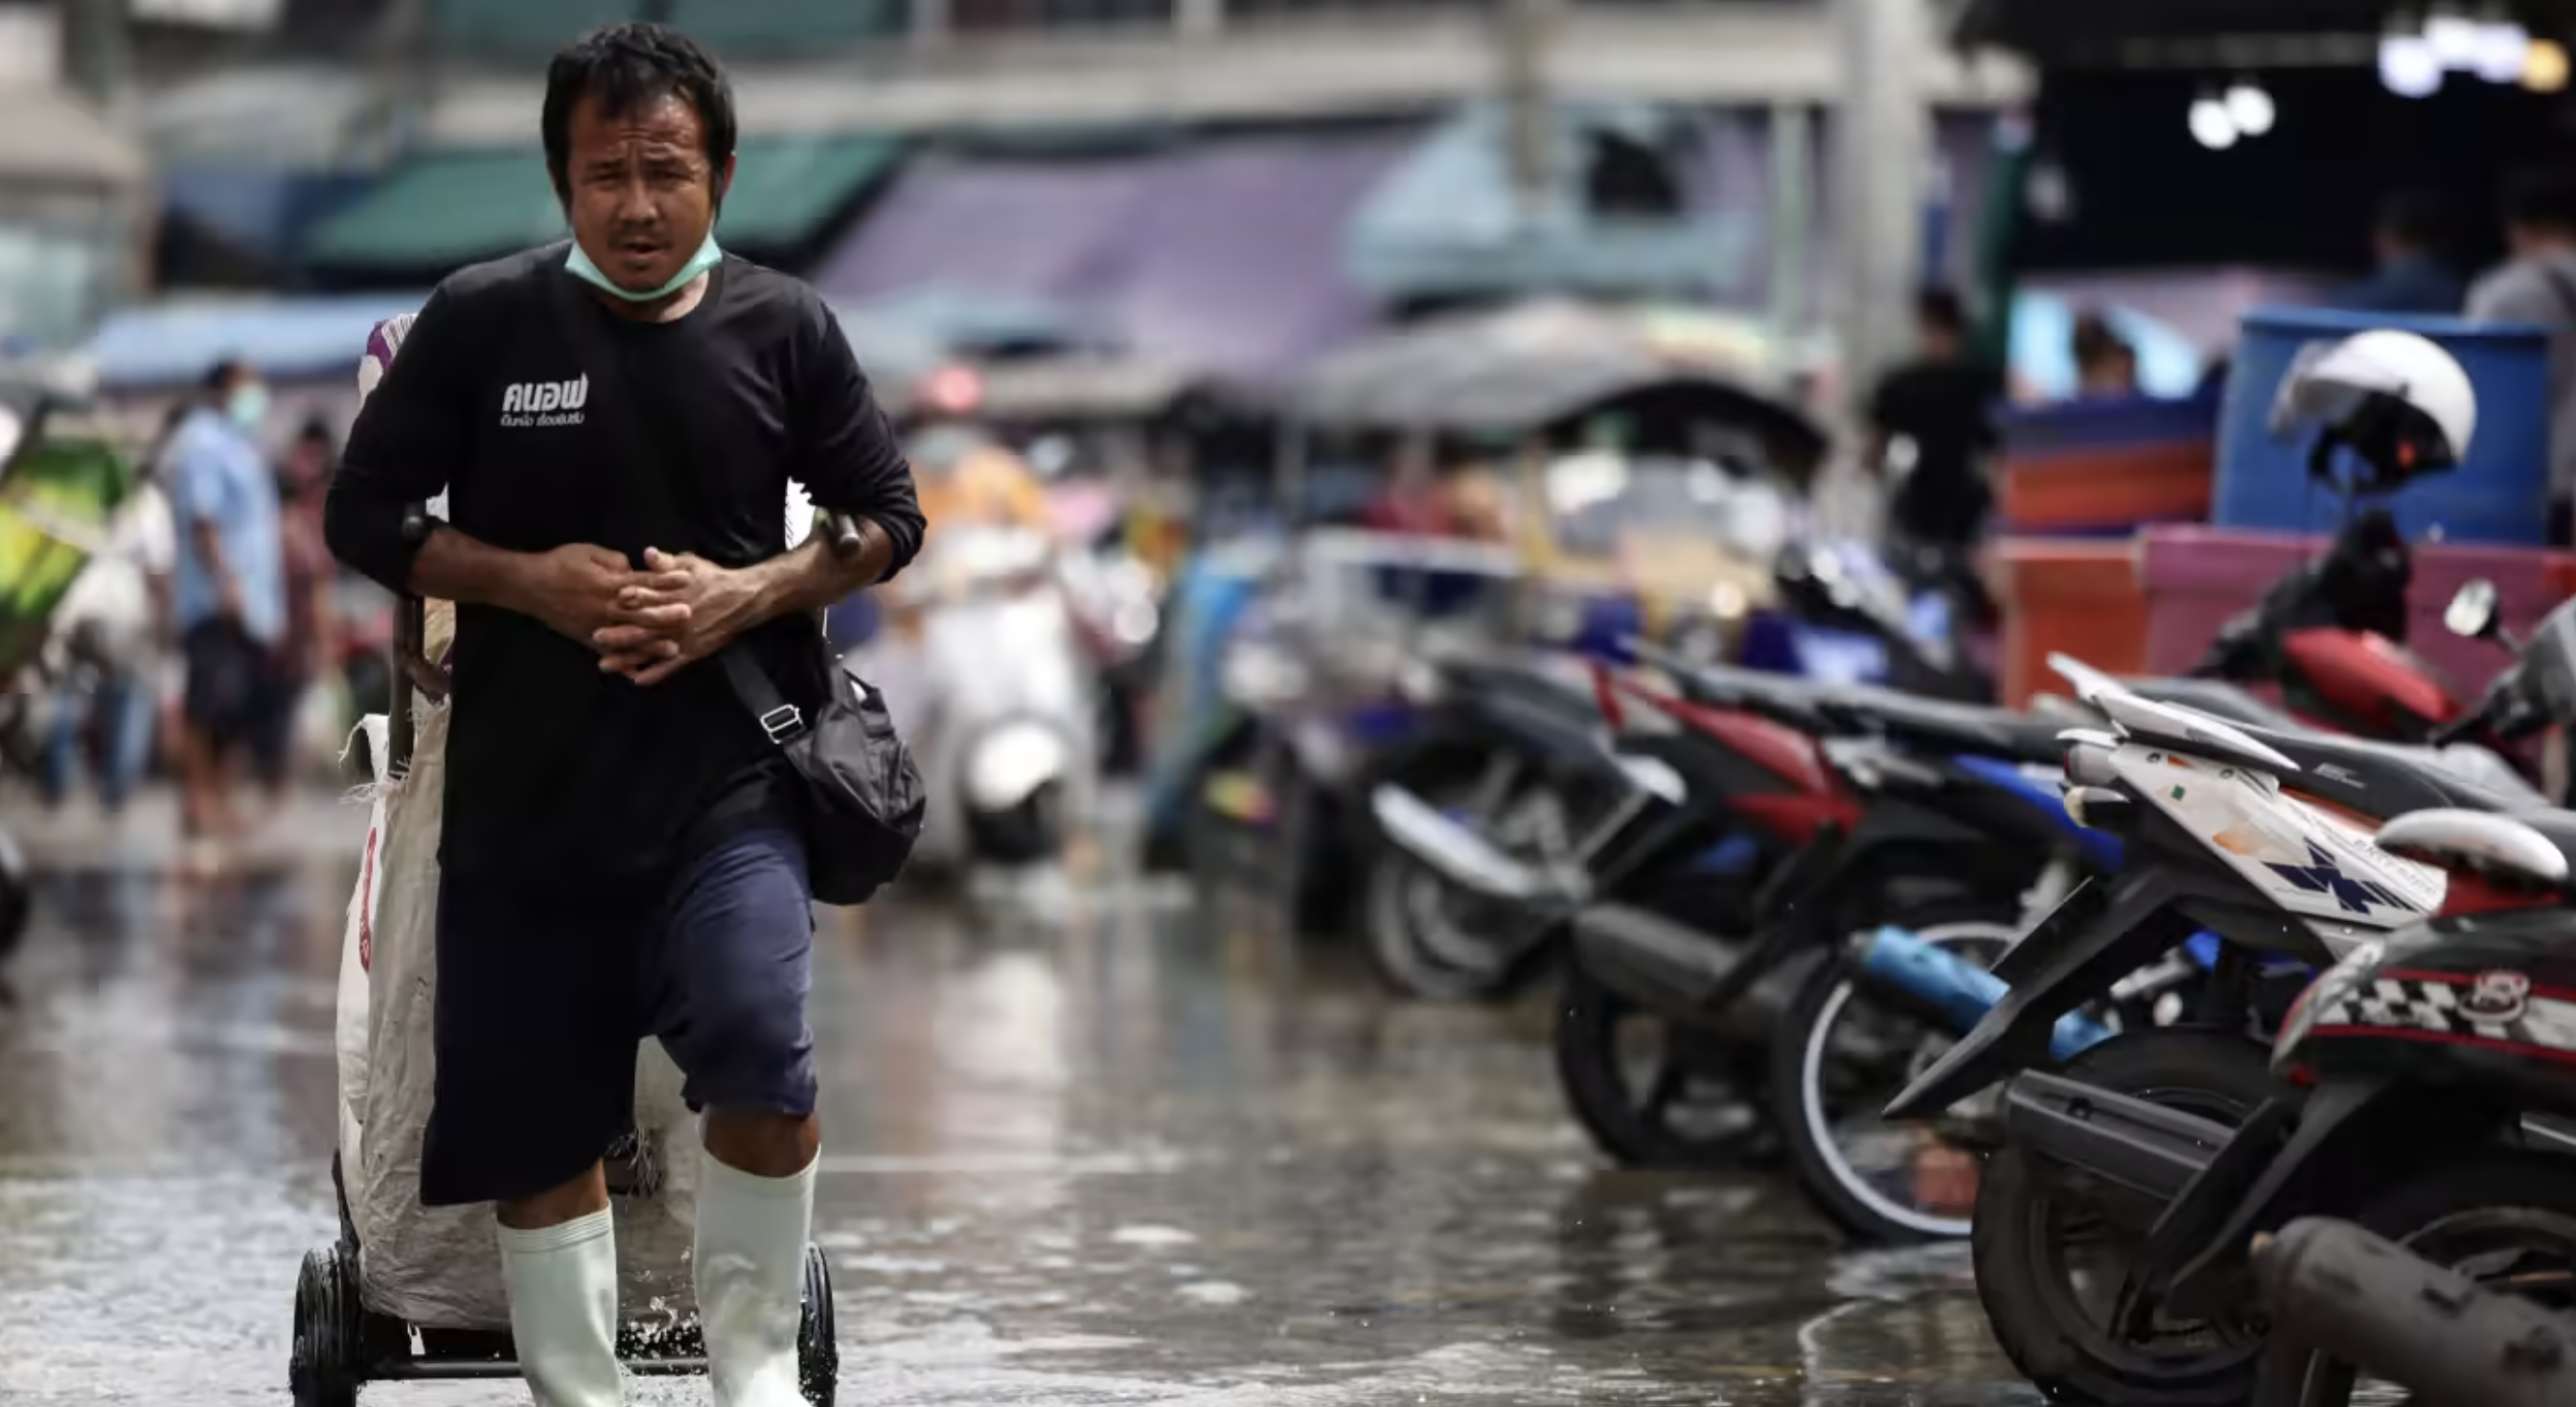 Một người đàn ông đi qua khu chợ ngập nước ở ngoại ô Bangkok vào tháng 11 năm 2021. Các quốc gia châu Á đặc biệt dễ bị ảnh hưởng bởi các mối nguy hiểm liên quan đến thời tiết. © Reuters